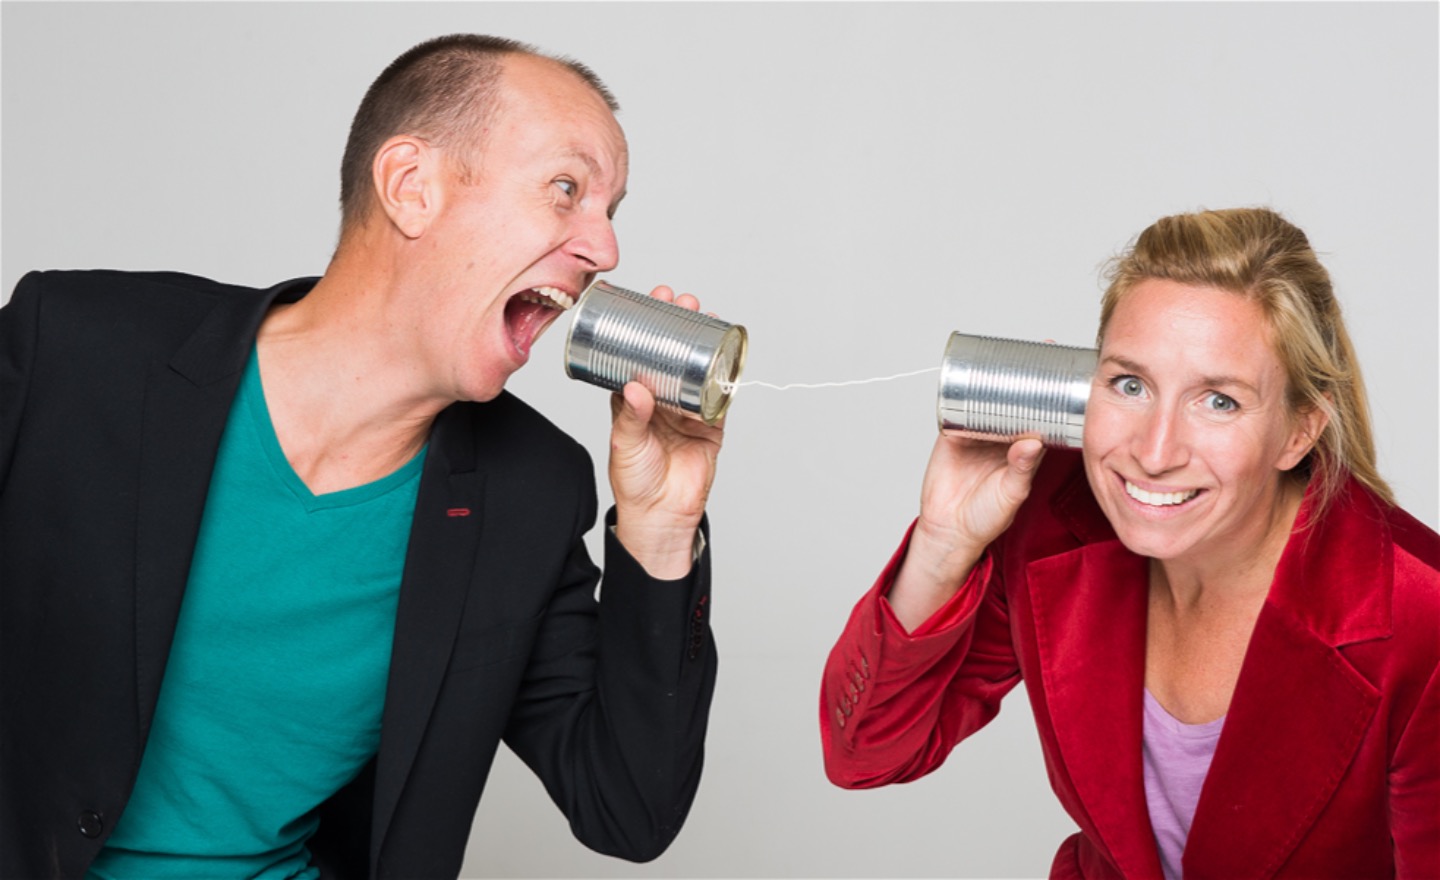 En person ropar till en annan. De kommunicerar genom två konservburkar sammanbundna med ett snöre.